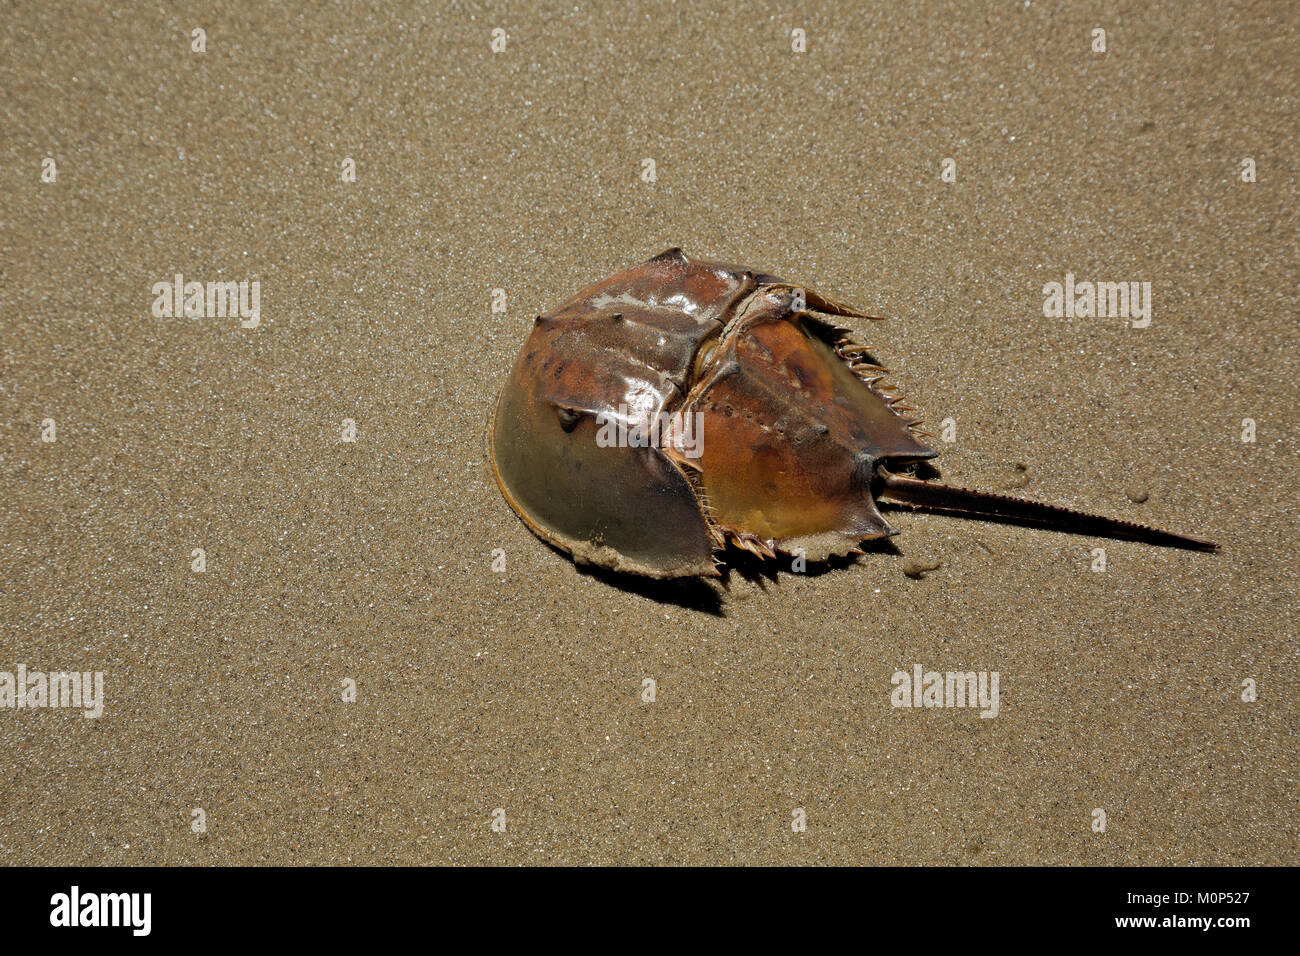 NC01411-00...CAROLINA DEL NORTE - El duro caparazón del límulo encontradas a lo largo de las playas de arena de la Outer Banks. Foto de stock